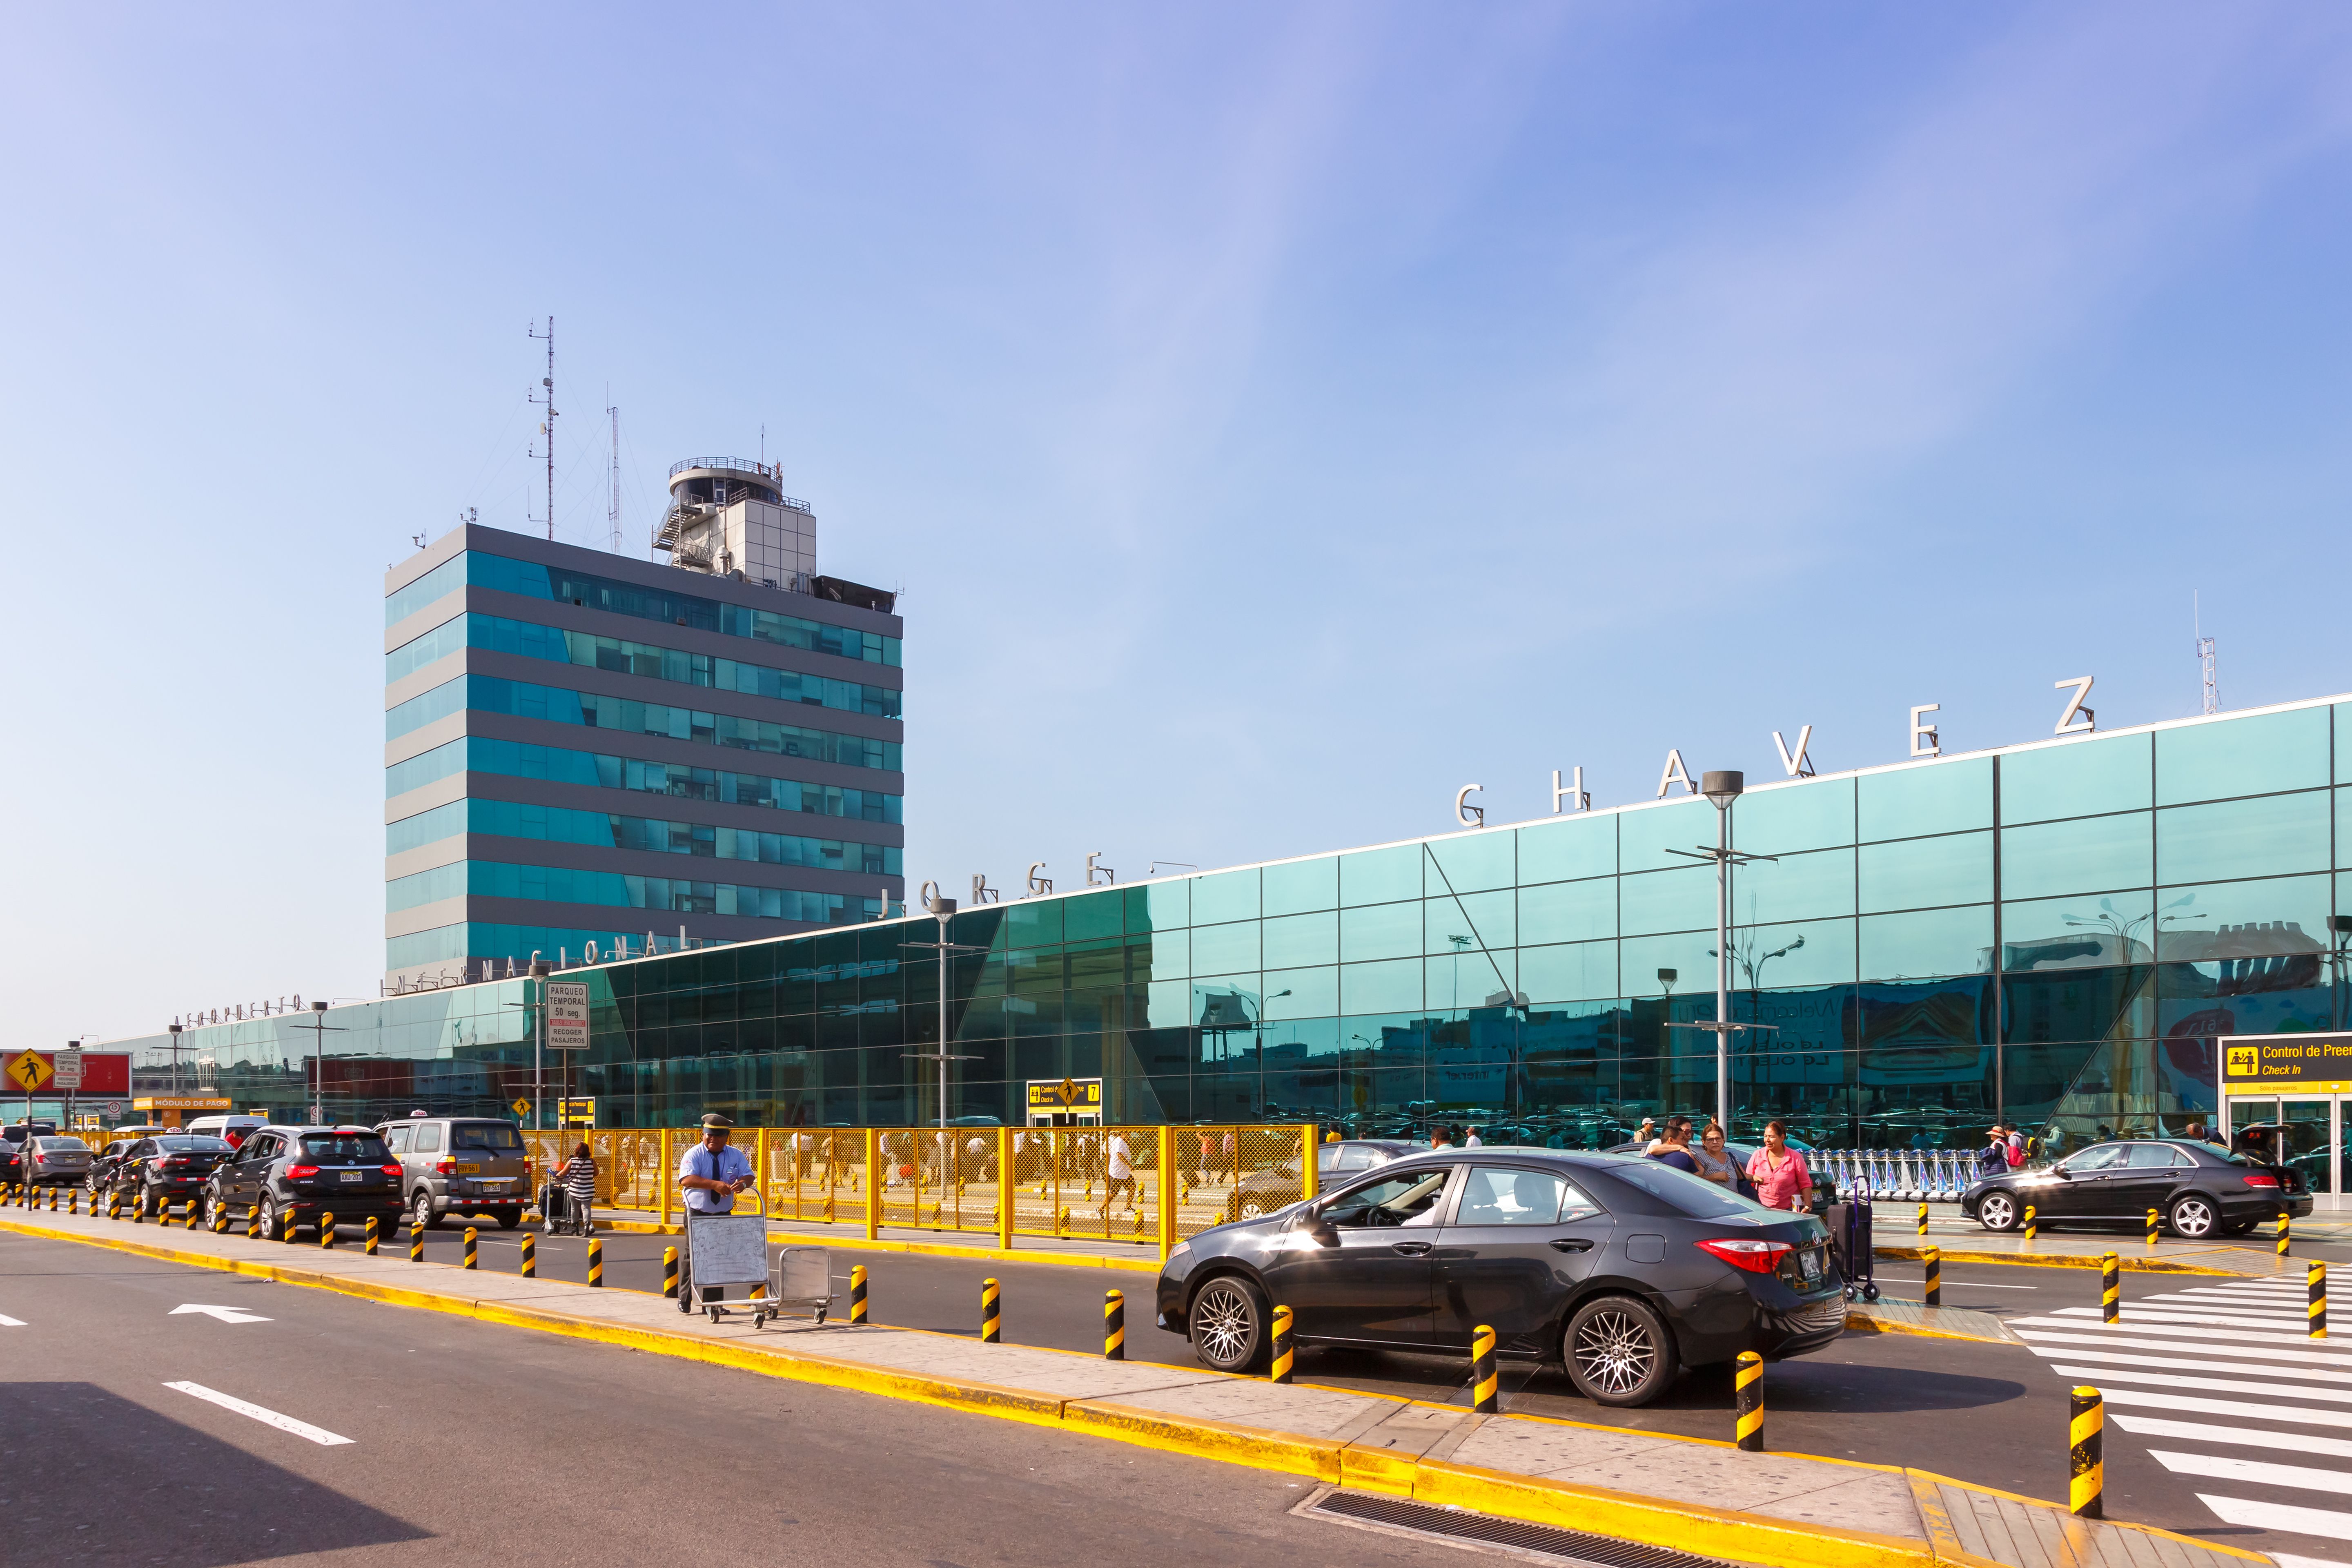 Terminal of Lima airport (LIM) in Peru.